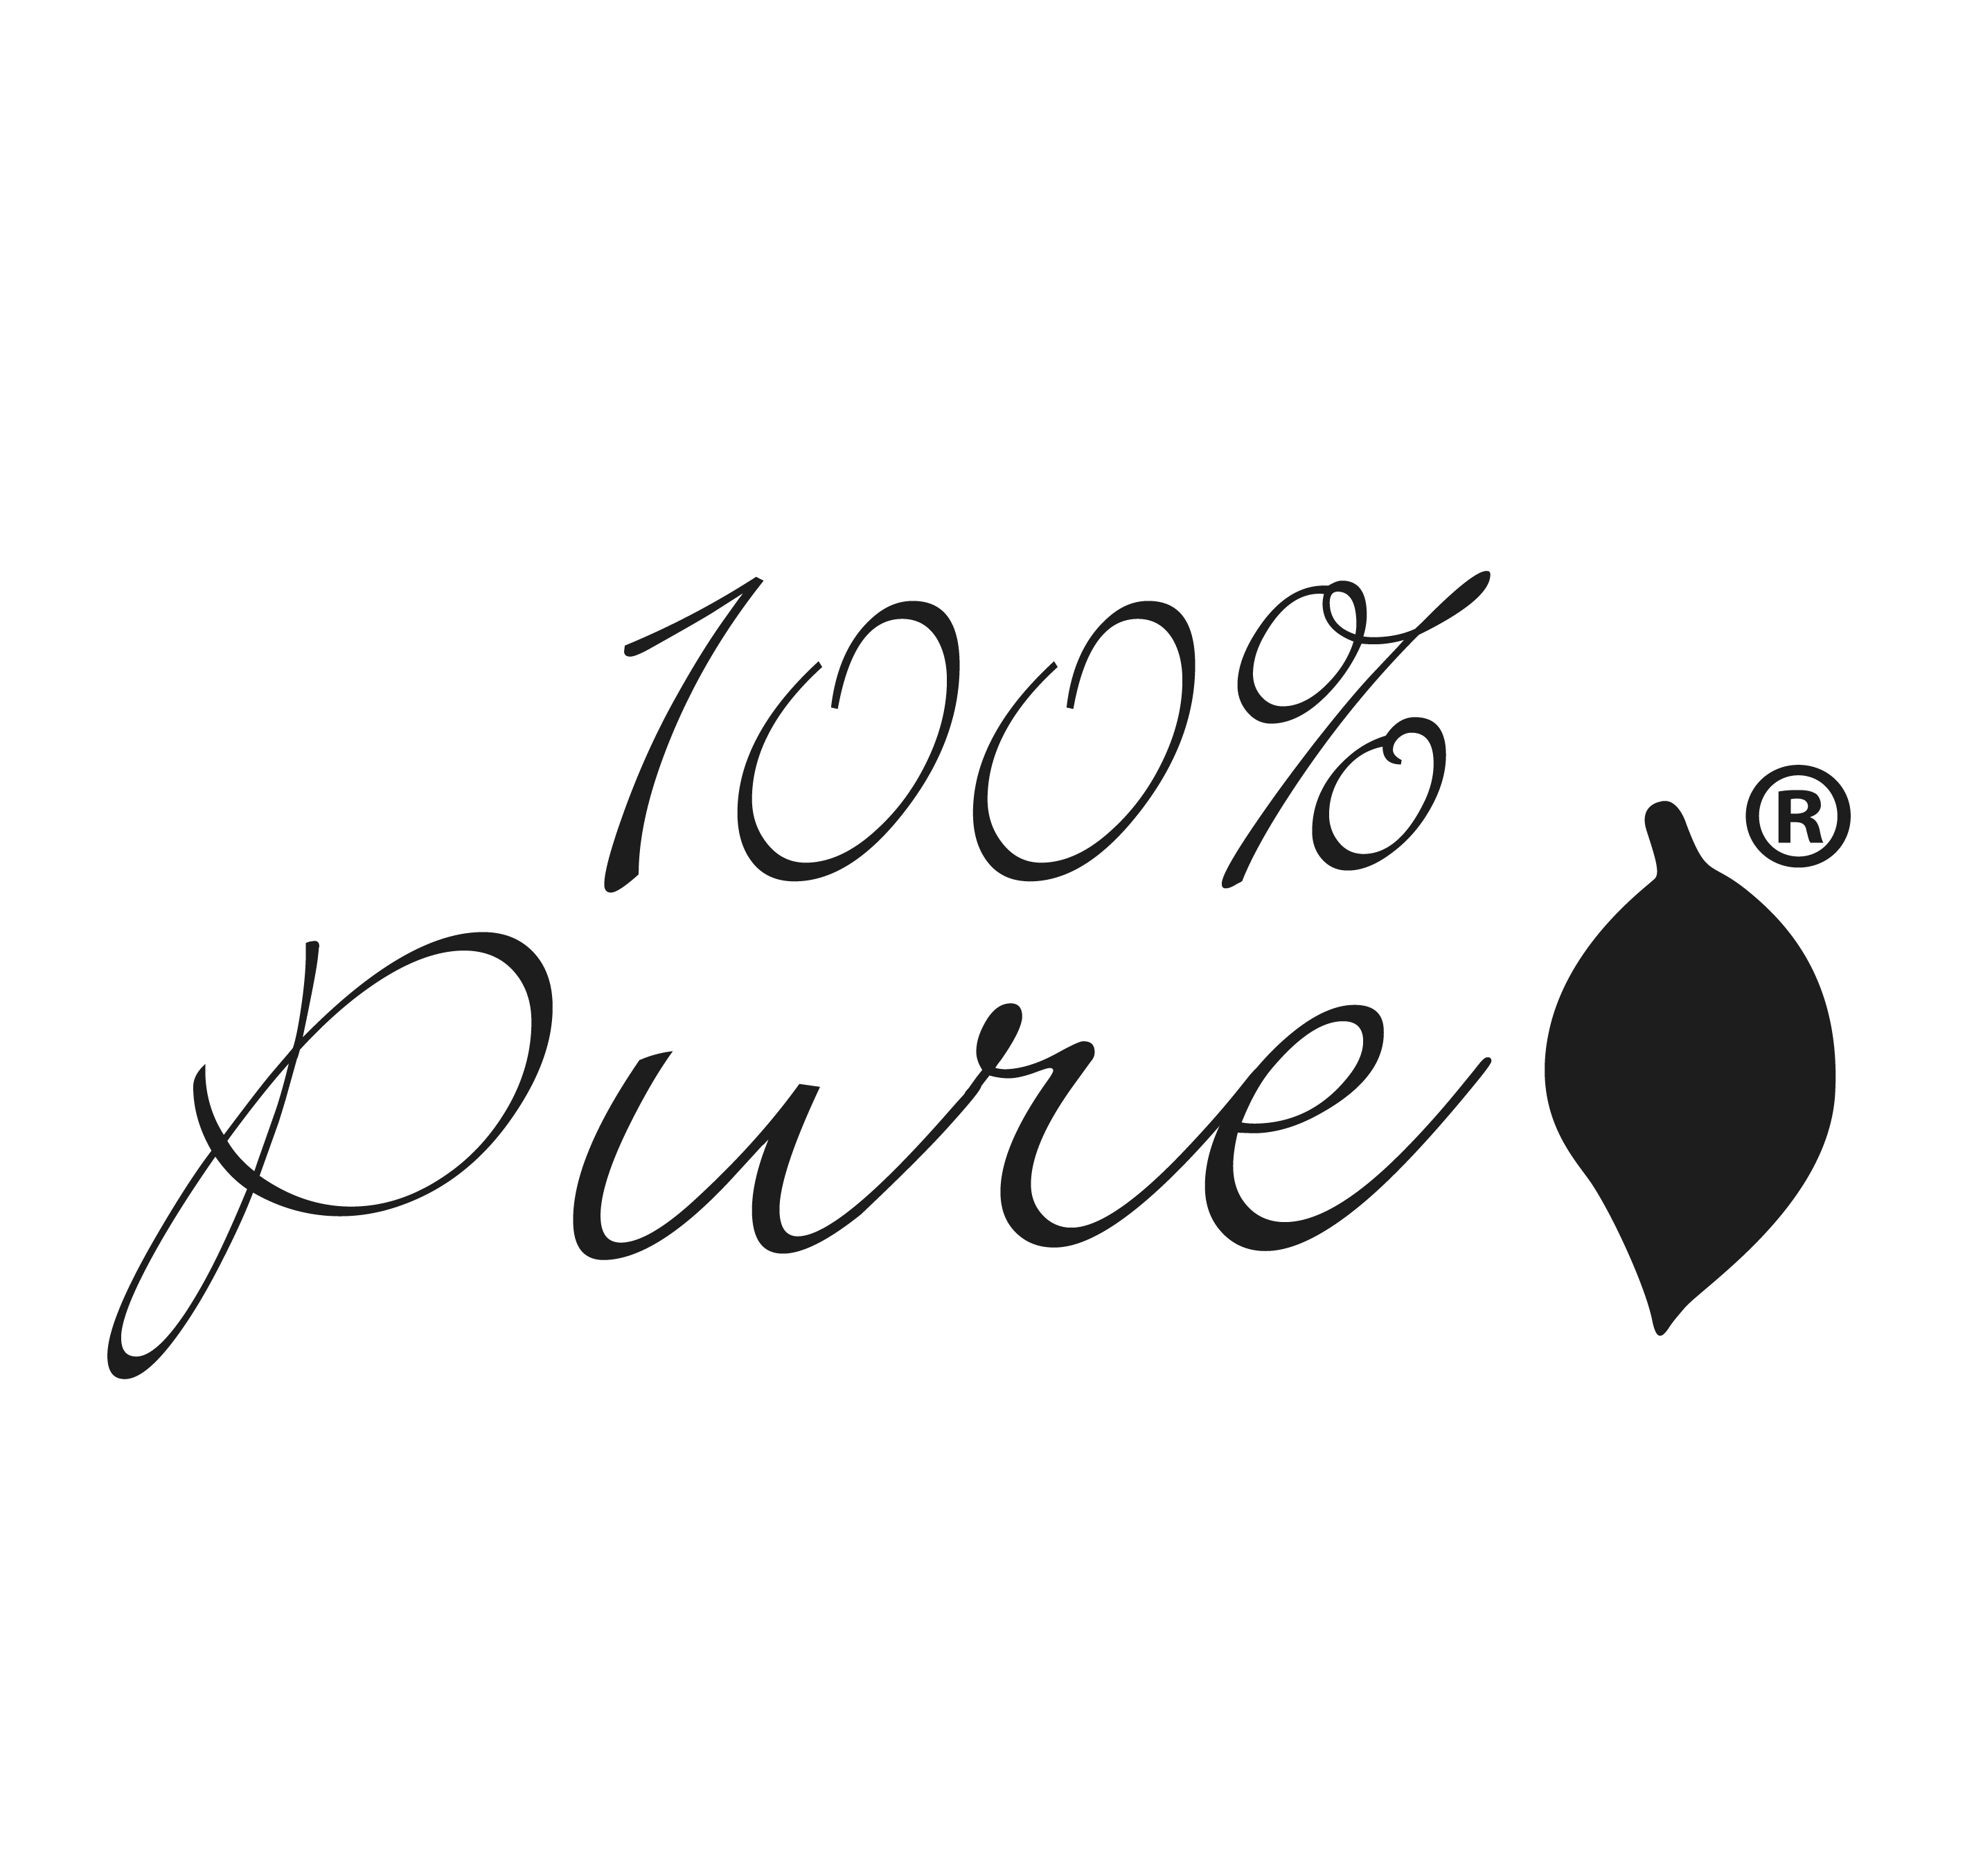 100% pure